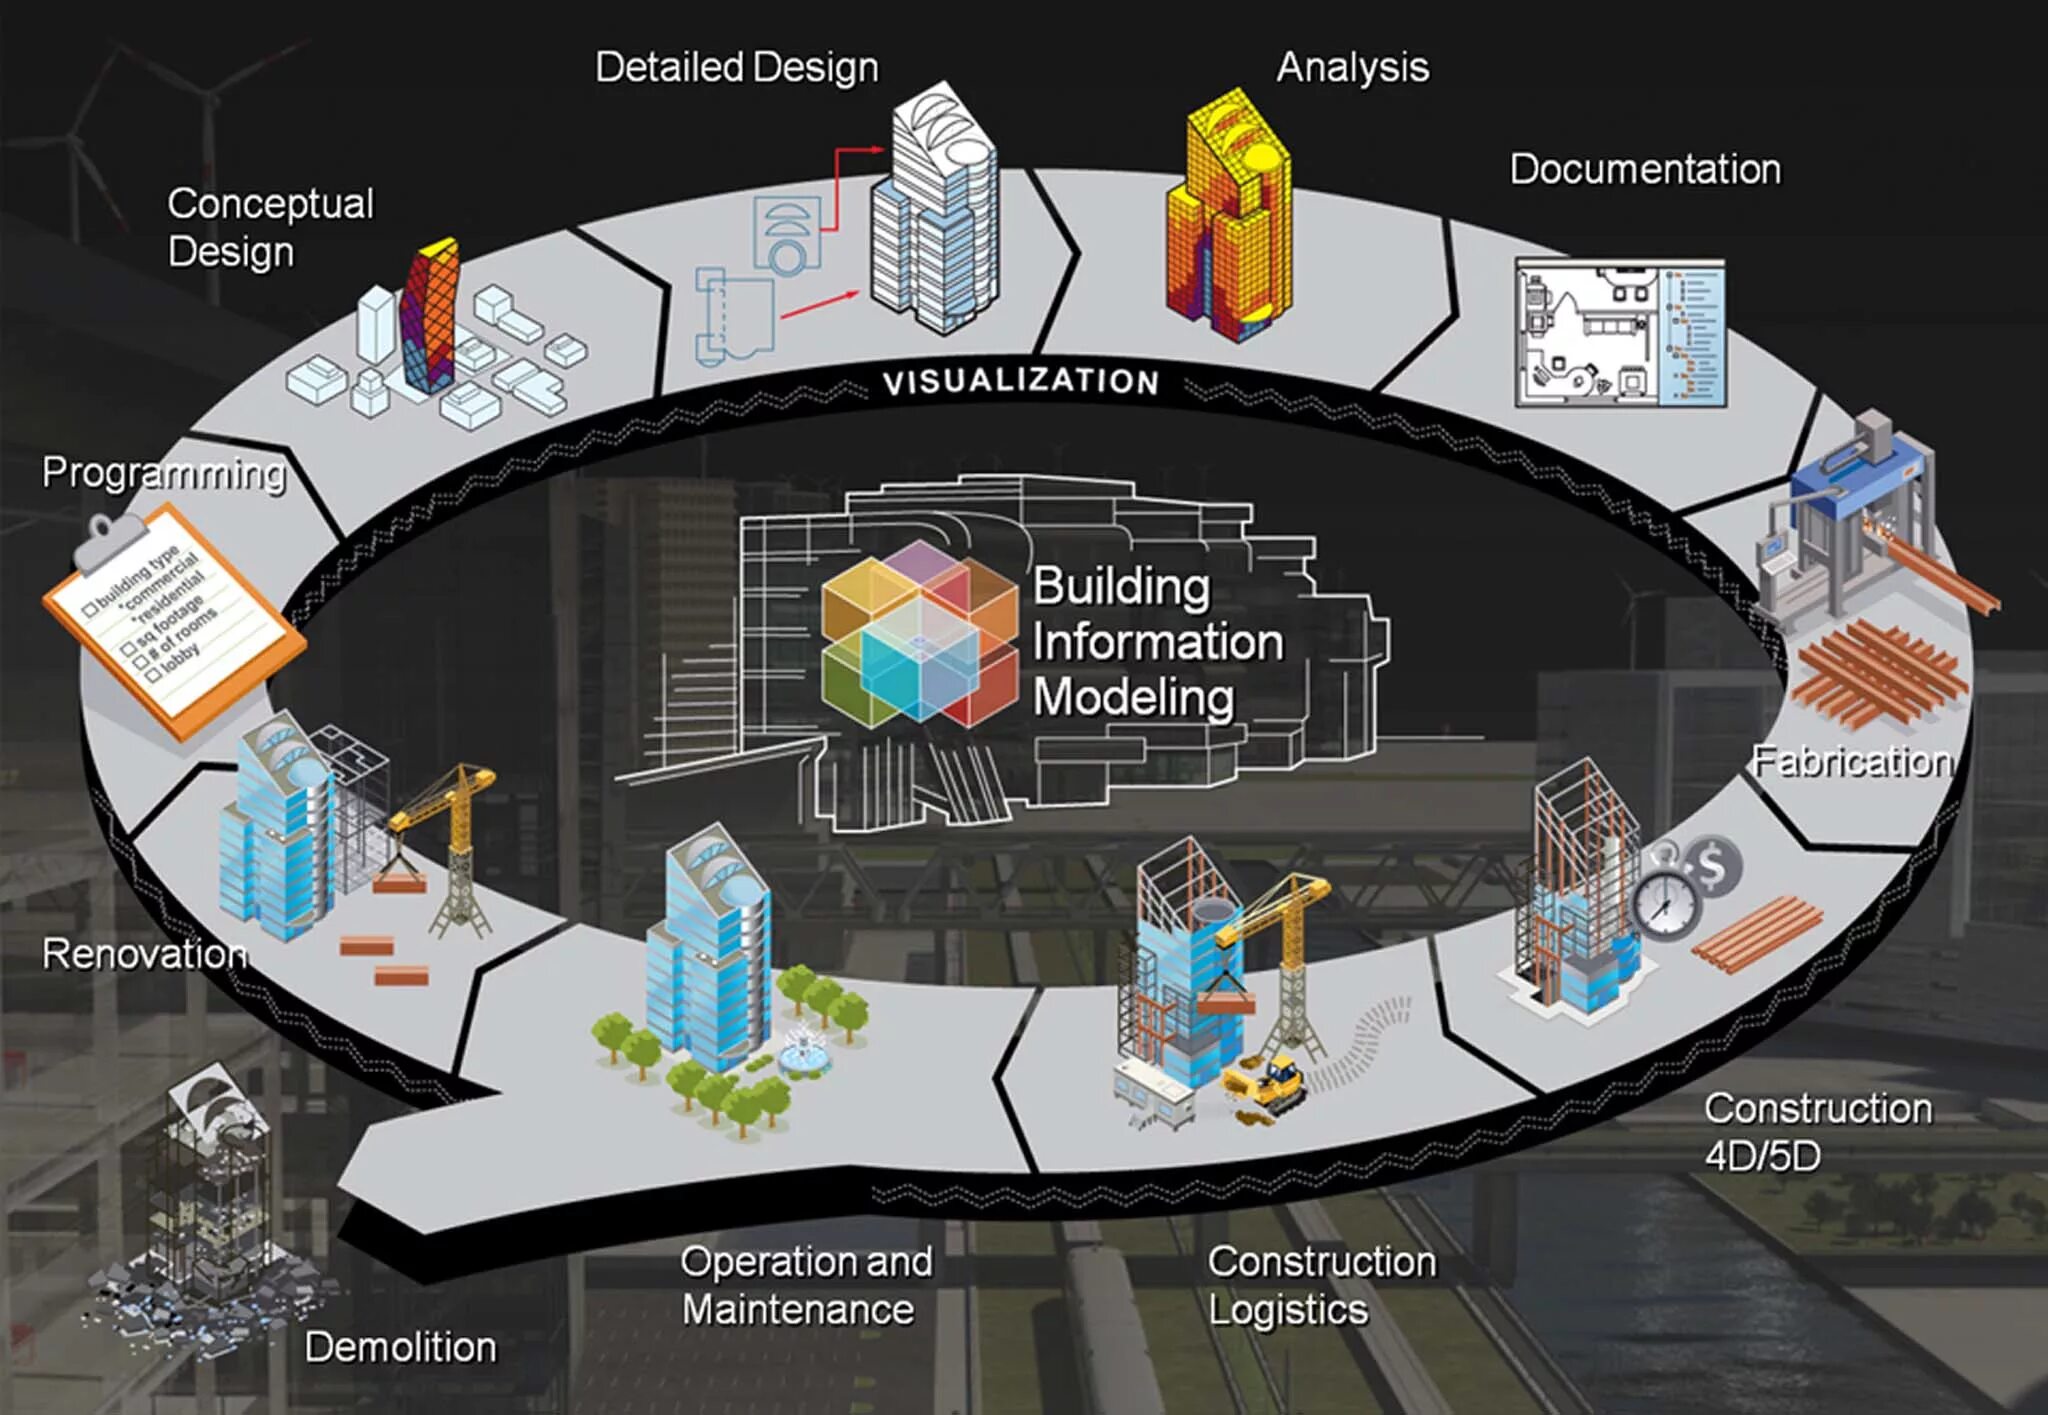 Detailed design. Жизненный цикл BIM модели. BIM (building information model) – технологии информационного моделирования. BIM модель цикл здания. Этапы BIM-моделирования в строительстве.